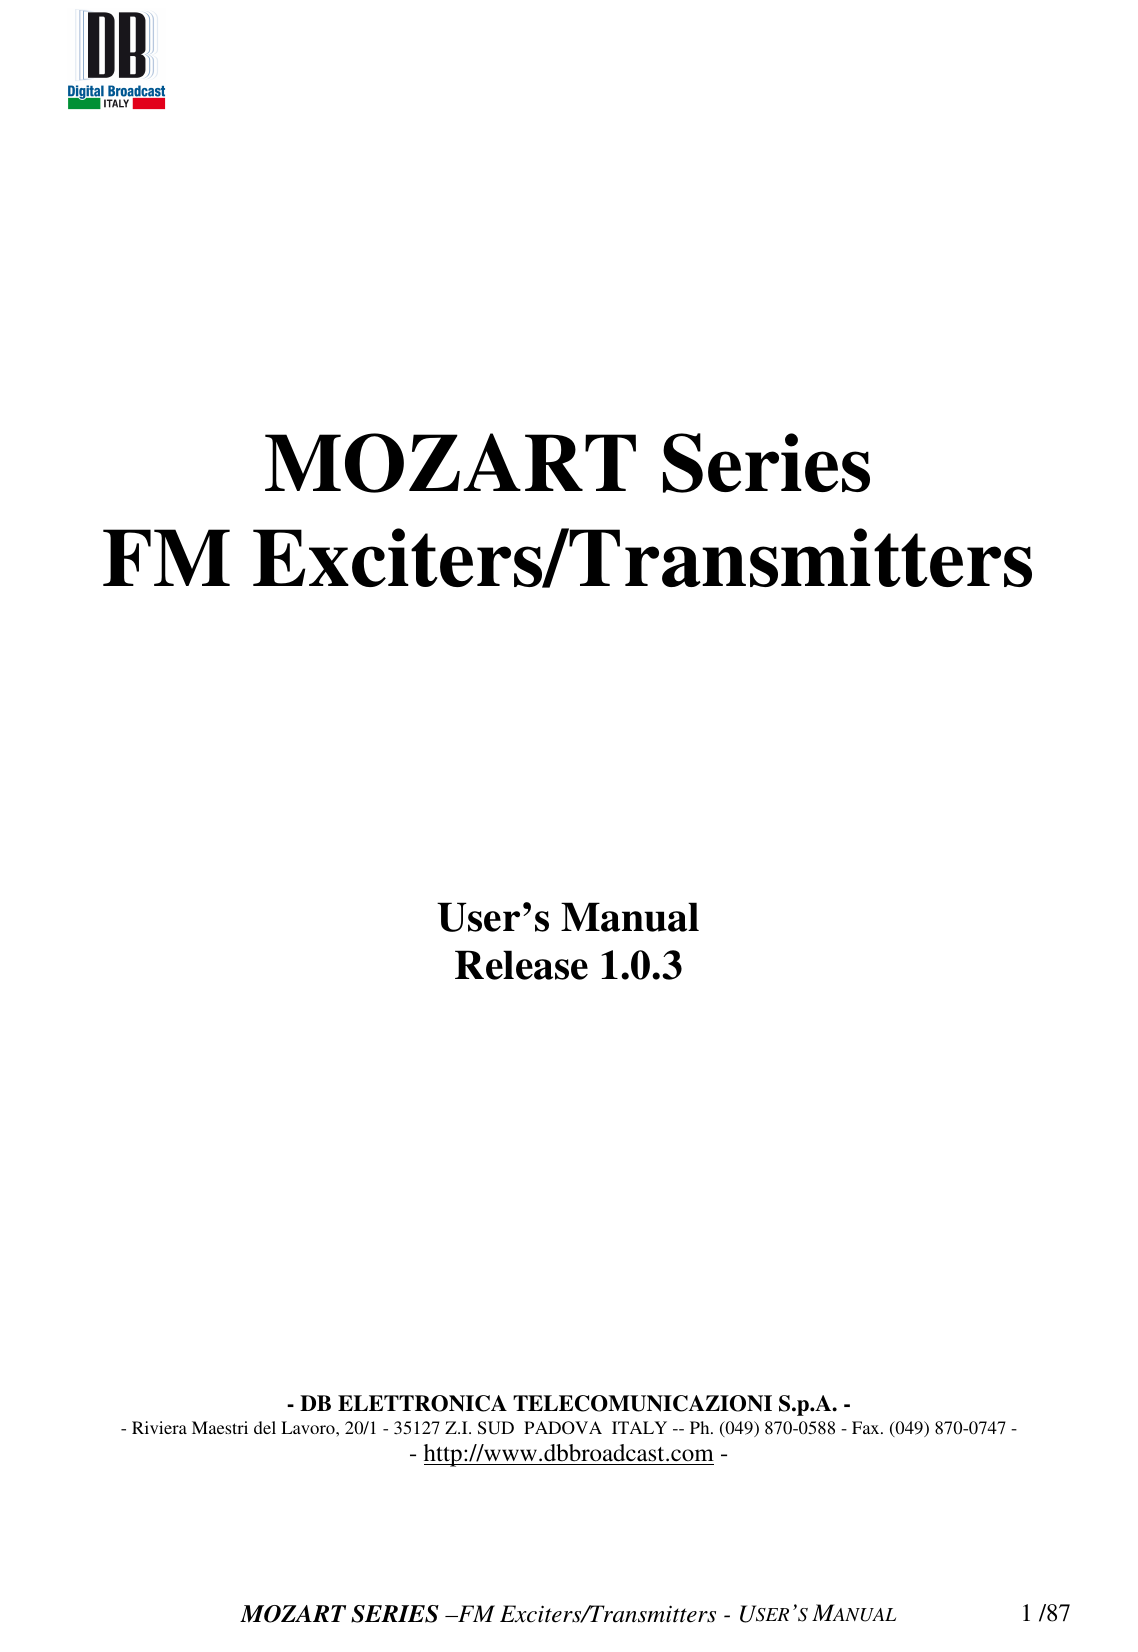   MOZART SERIES –FM Exciters/Transmitters - USER’S MANUAL  1 /87MOZART Series FM Exciters/Transmitters           User’s Manual Release 1.0.3               - DB ELETTRONICA TELECOMUNICAZIONI S.p.A. - - Riviera Maestri del Lavoro, 20/1 - 35127 Z.I. SUD  PADOVA  ITALY -- Ph. (049) 870-0588 - Fax. (049) 870-0747 - - http://www.dbbroadcast.com -     